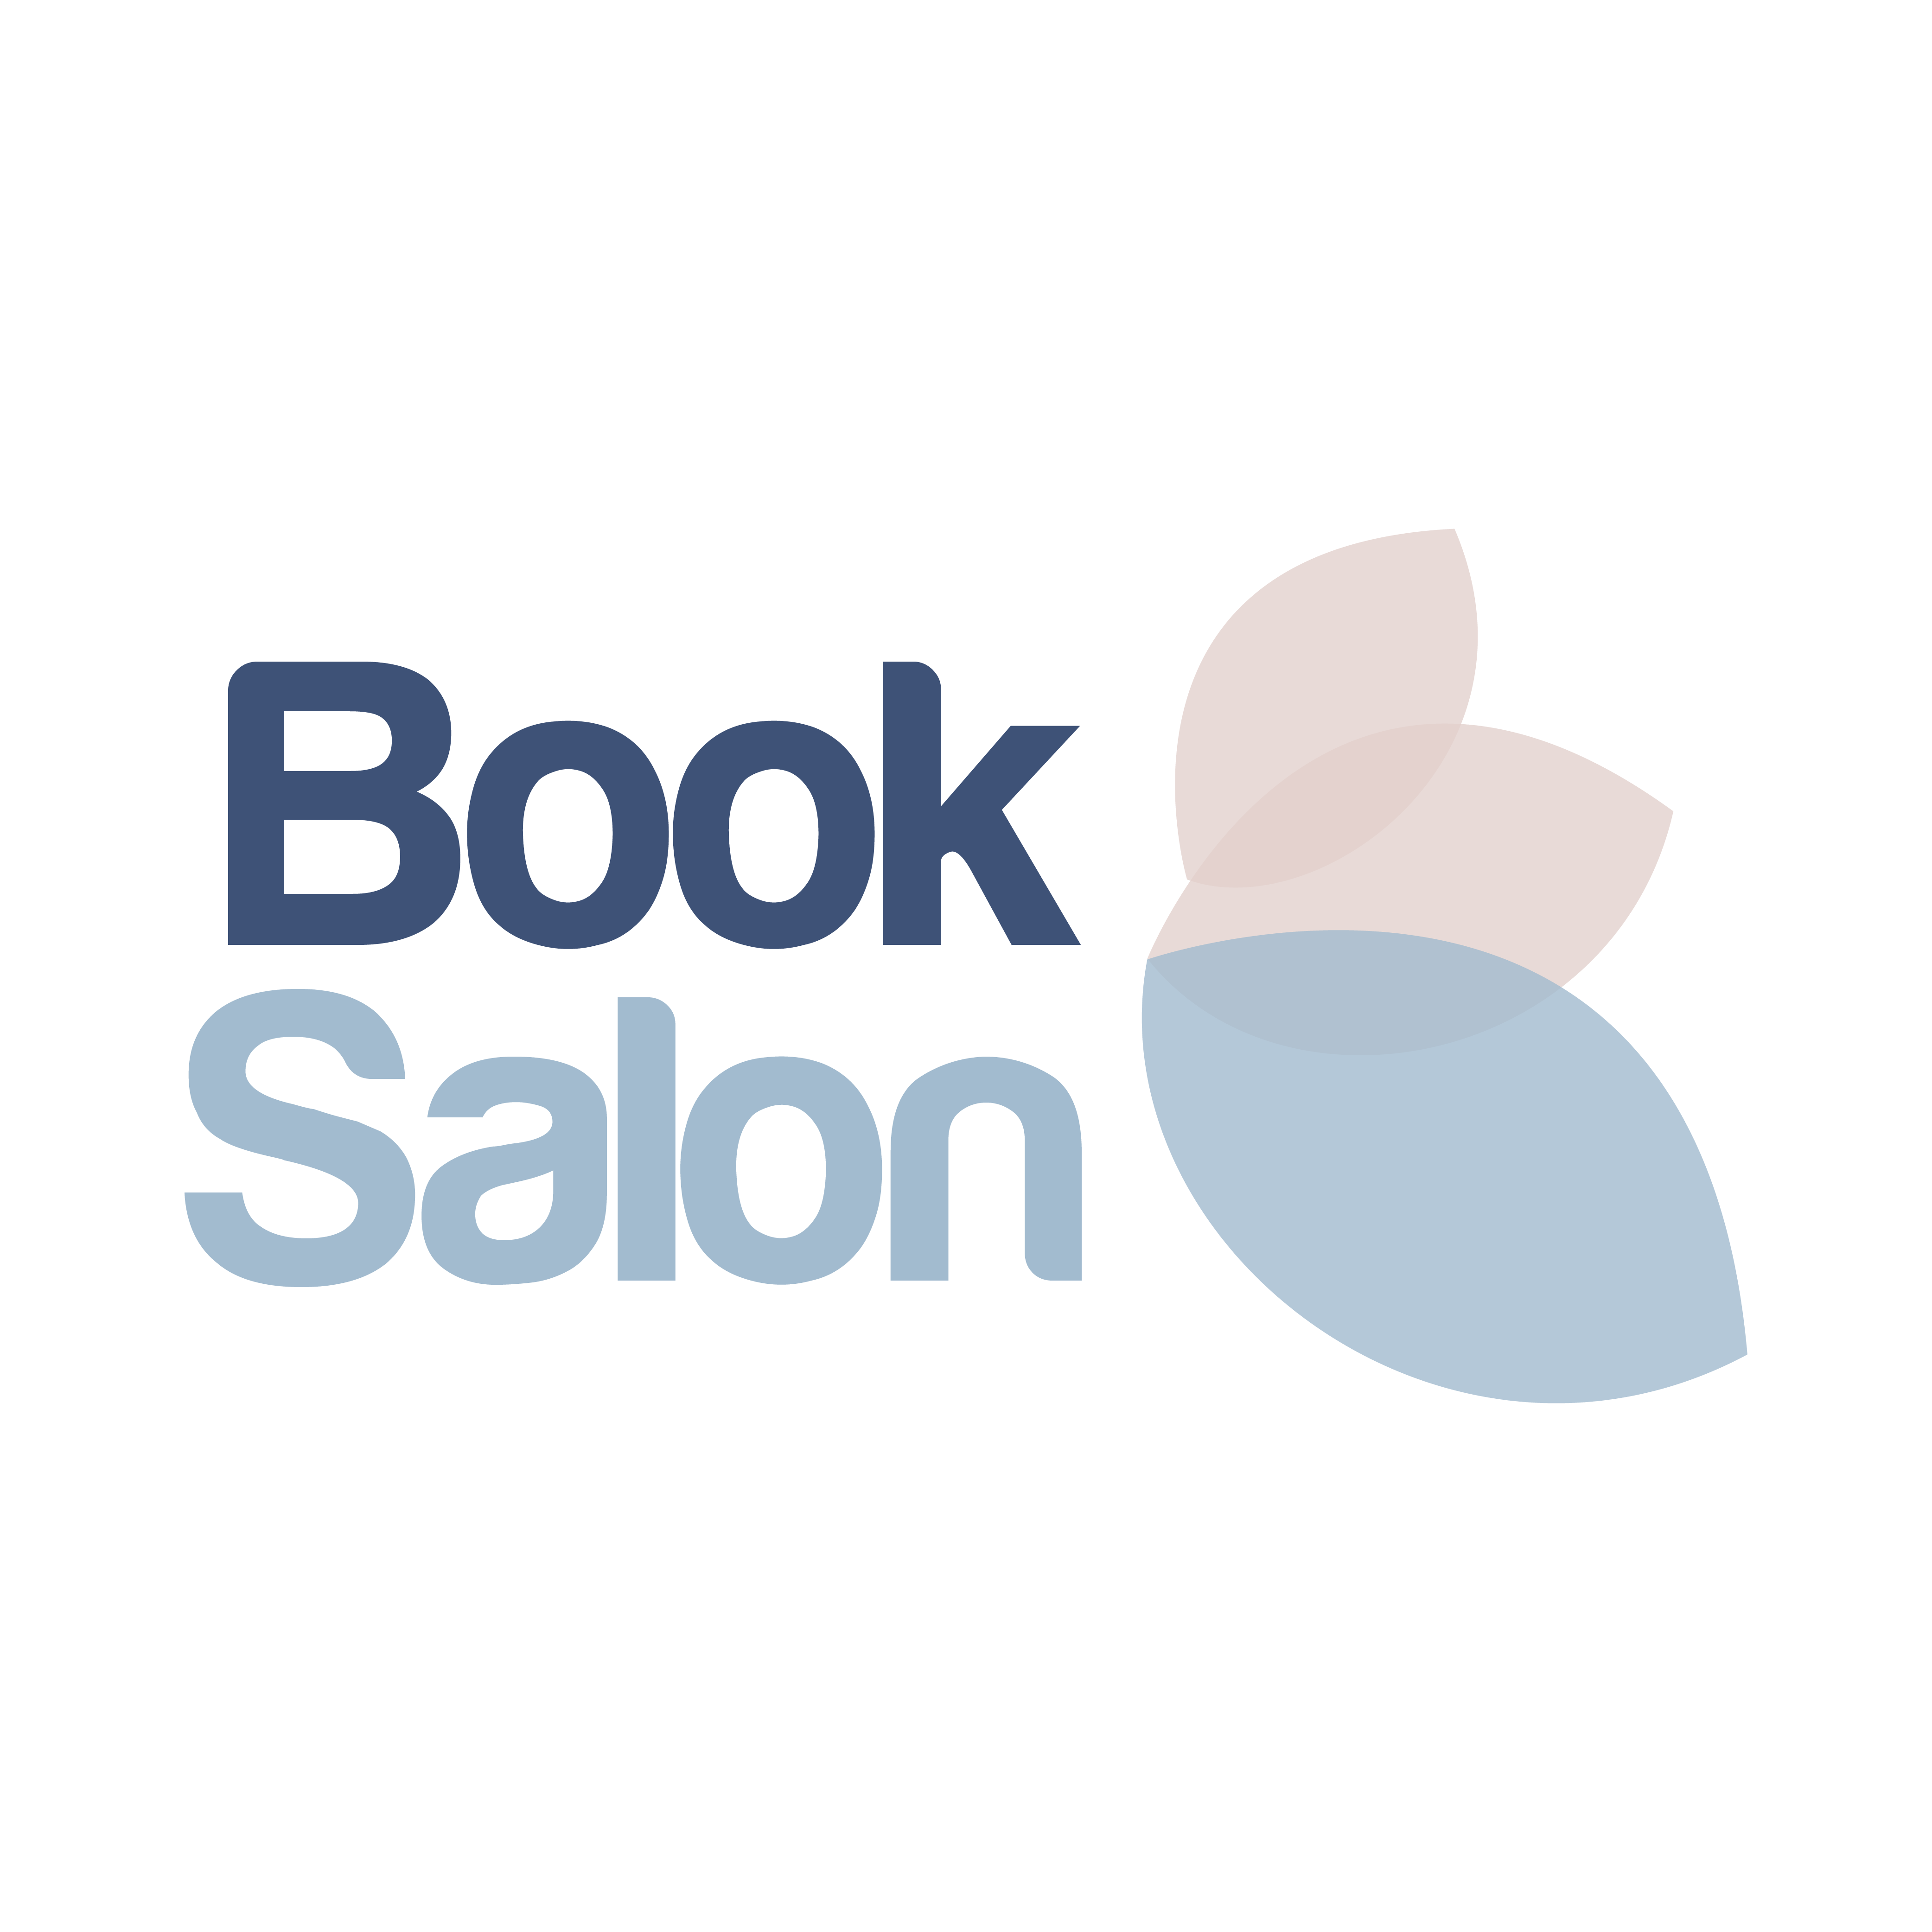 Book salon logo